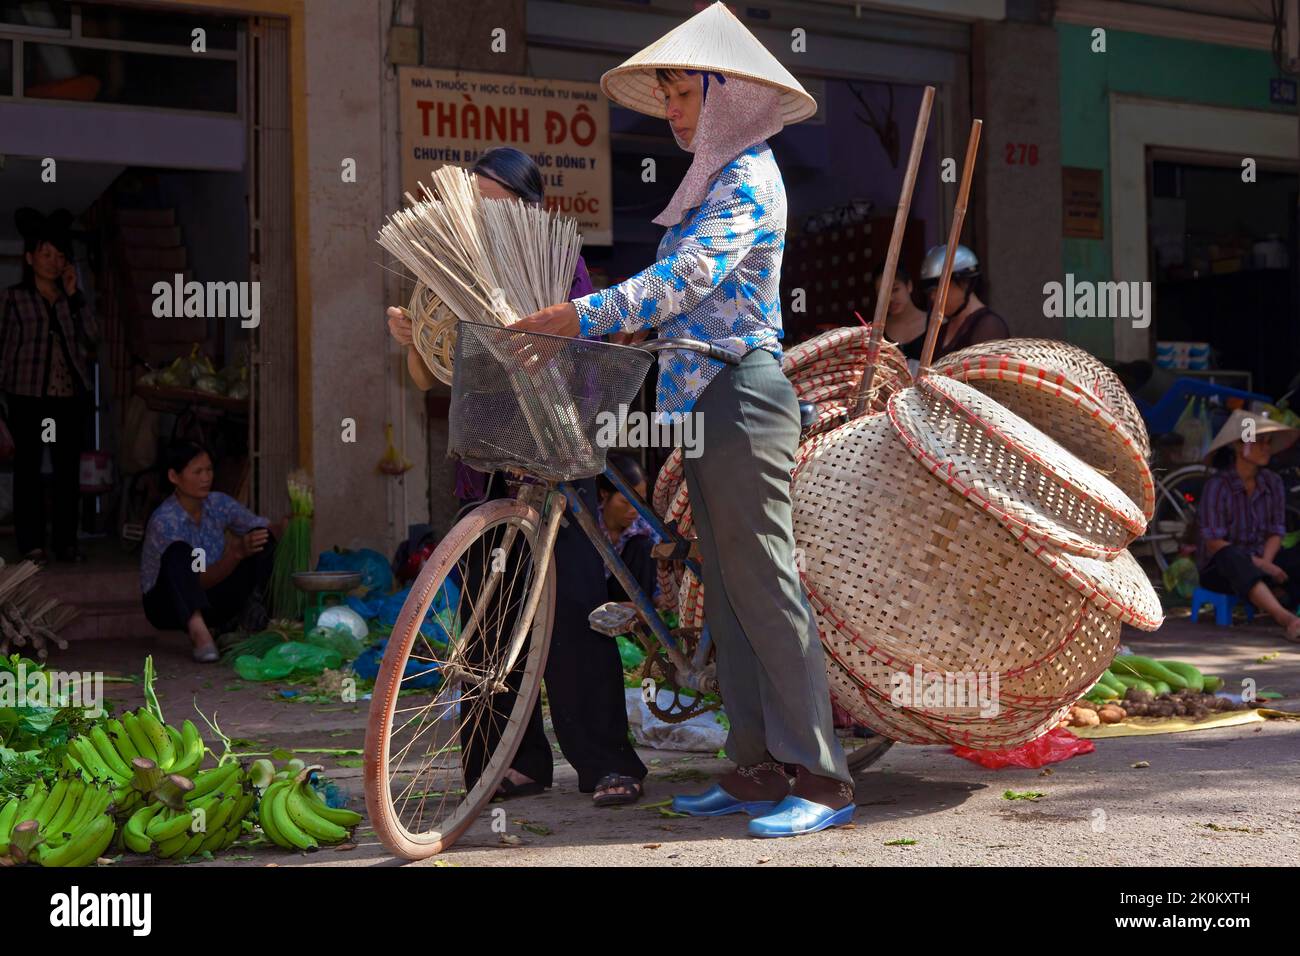 Vietnamesischer Händler mit Bambushut, der Korbartikel vom Fahrrad verkauft, arbeitet auf dem Straßenmarkt im Freien, Hai Phong, Vietnam Stockfoto